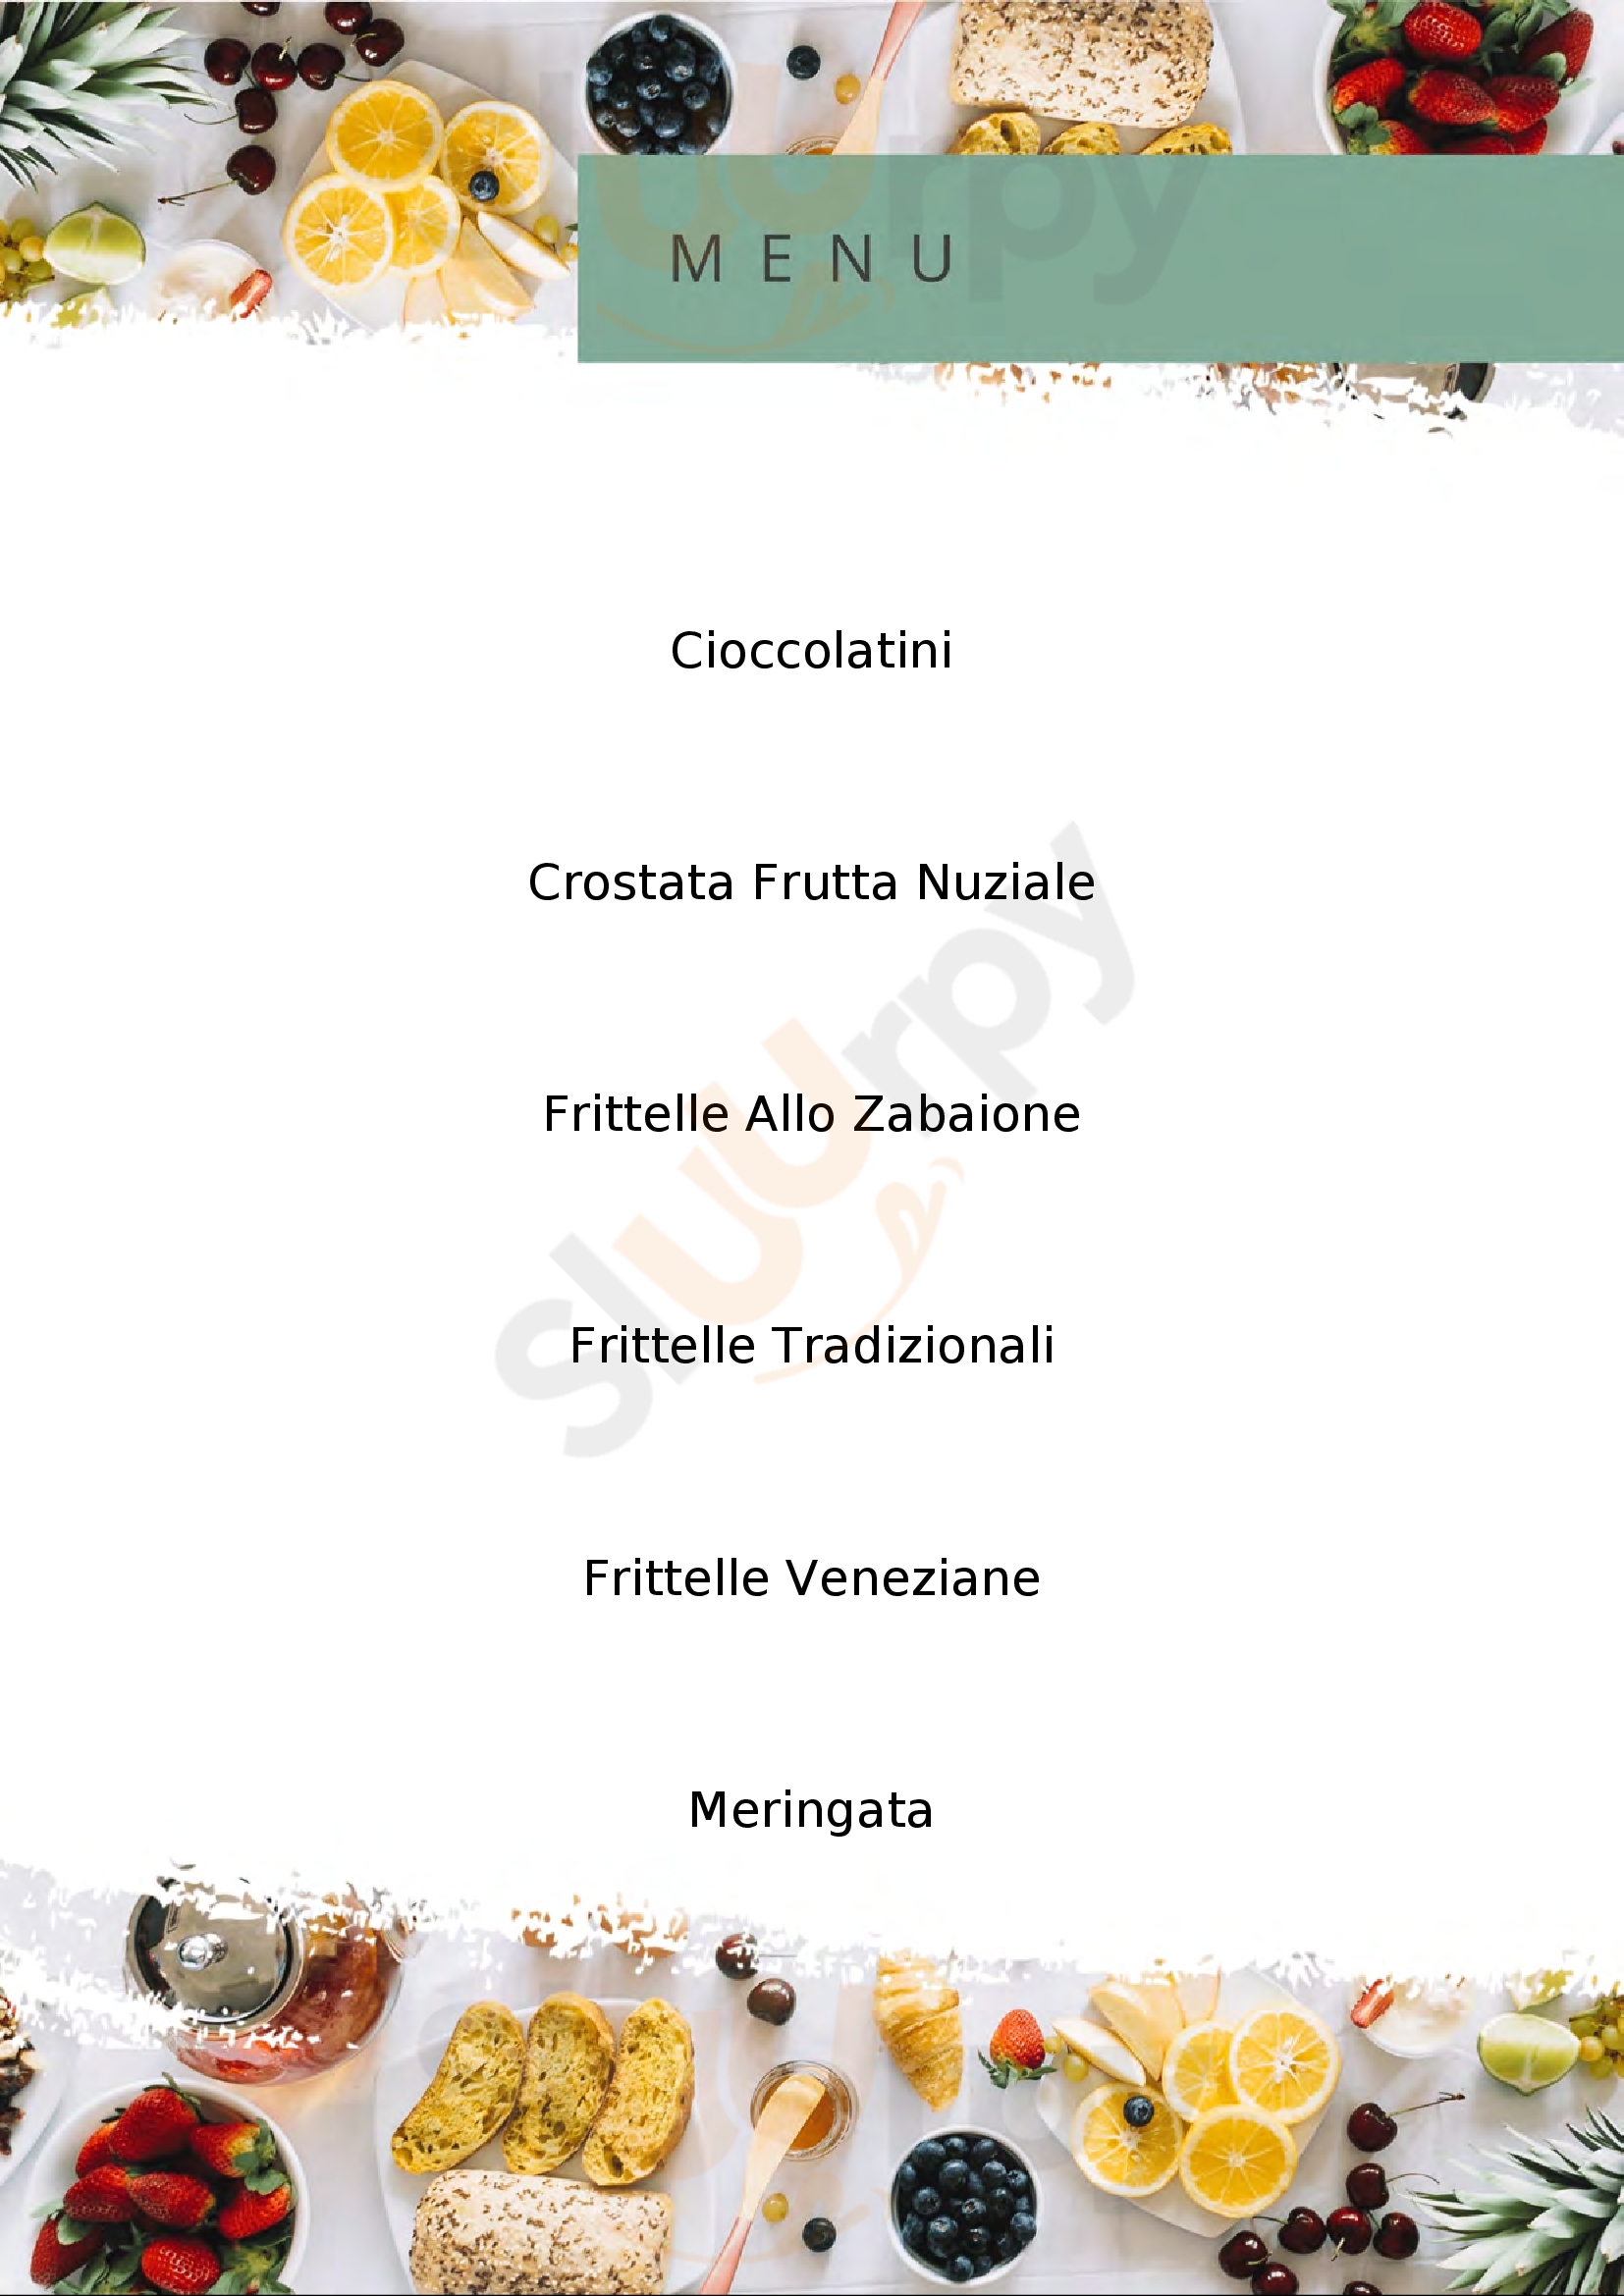 Pasticceria Ardizzoni Treviso menù 1 pagina